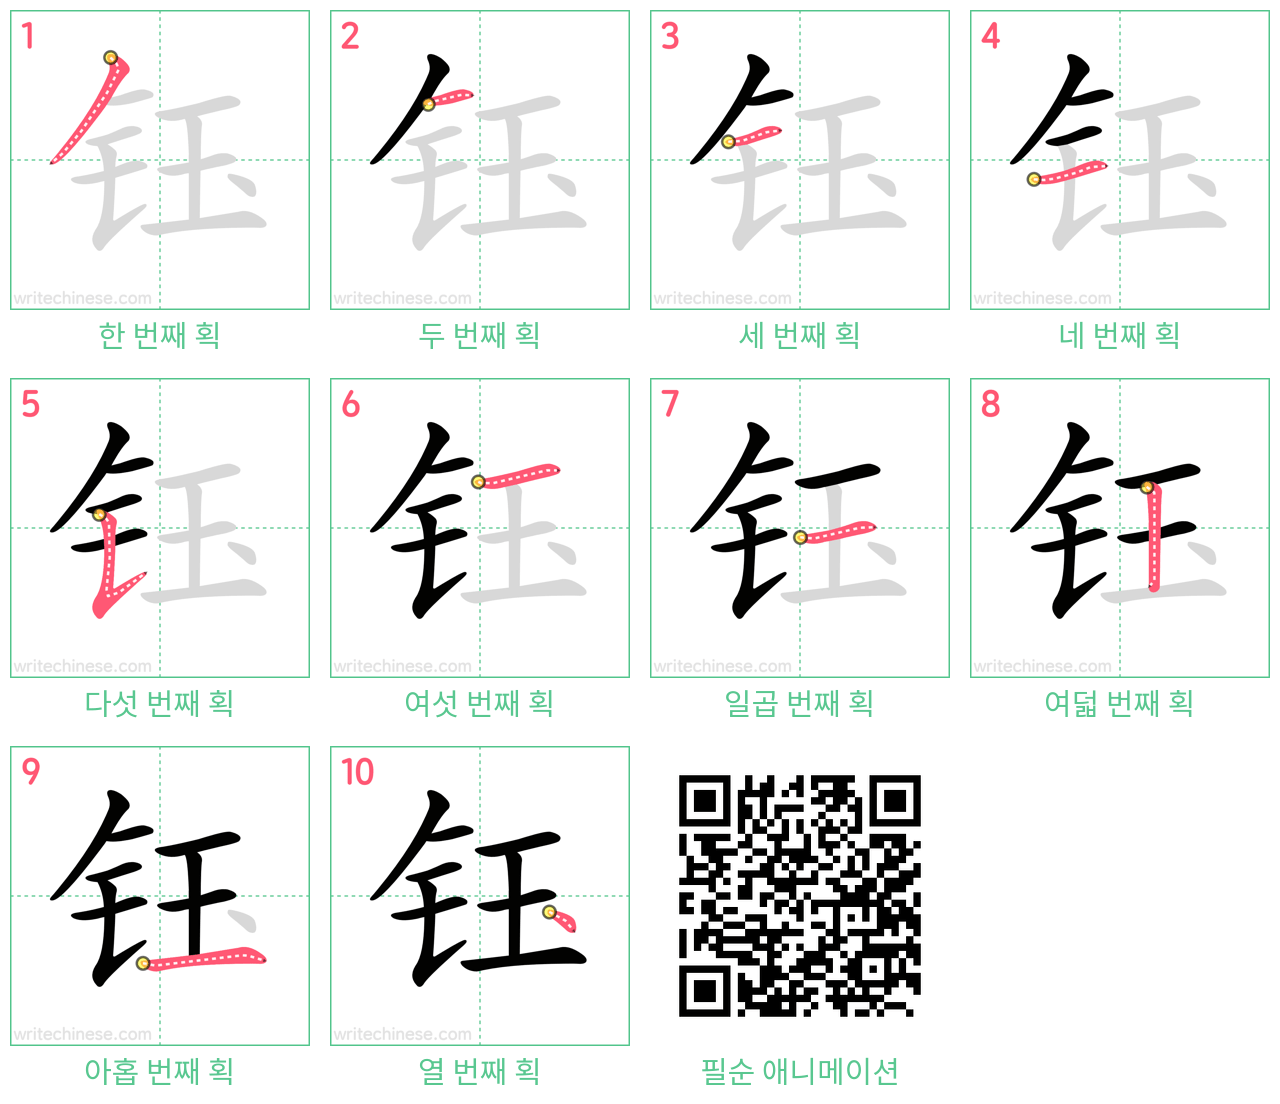 钰 step-by-step stroke order diagrams